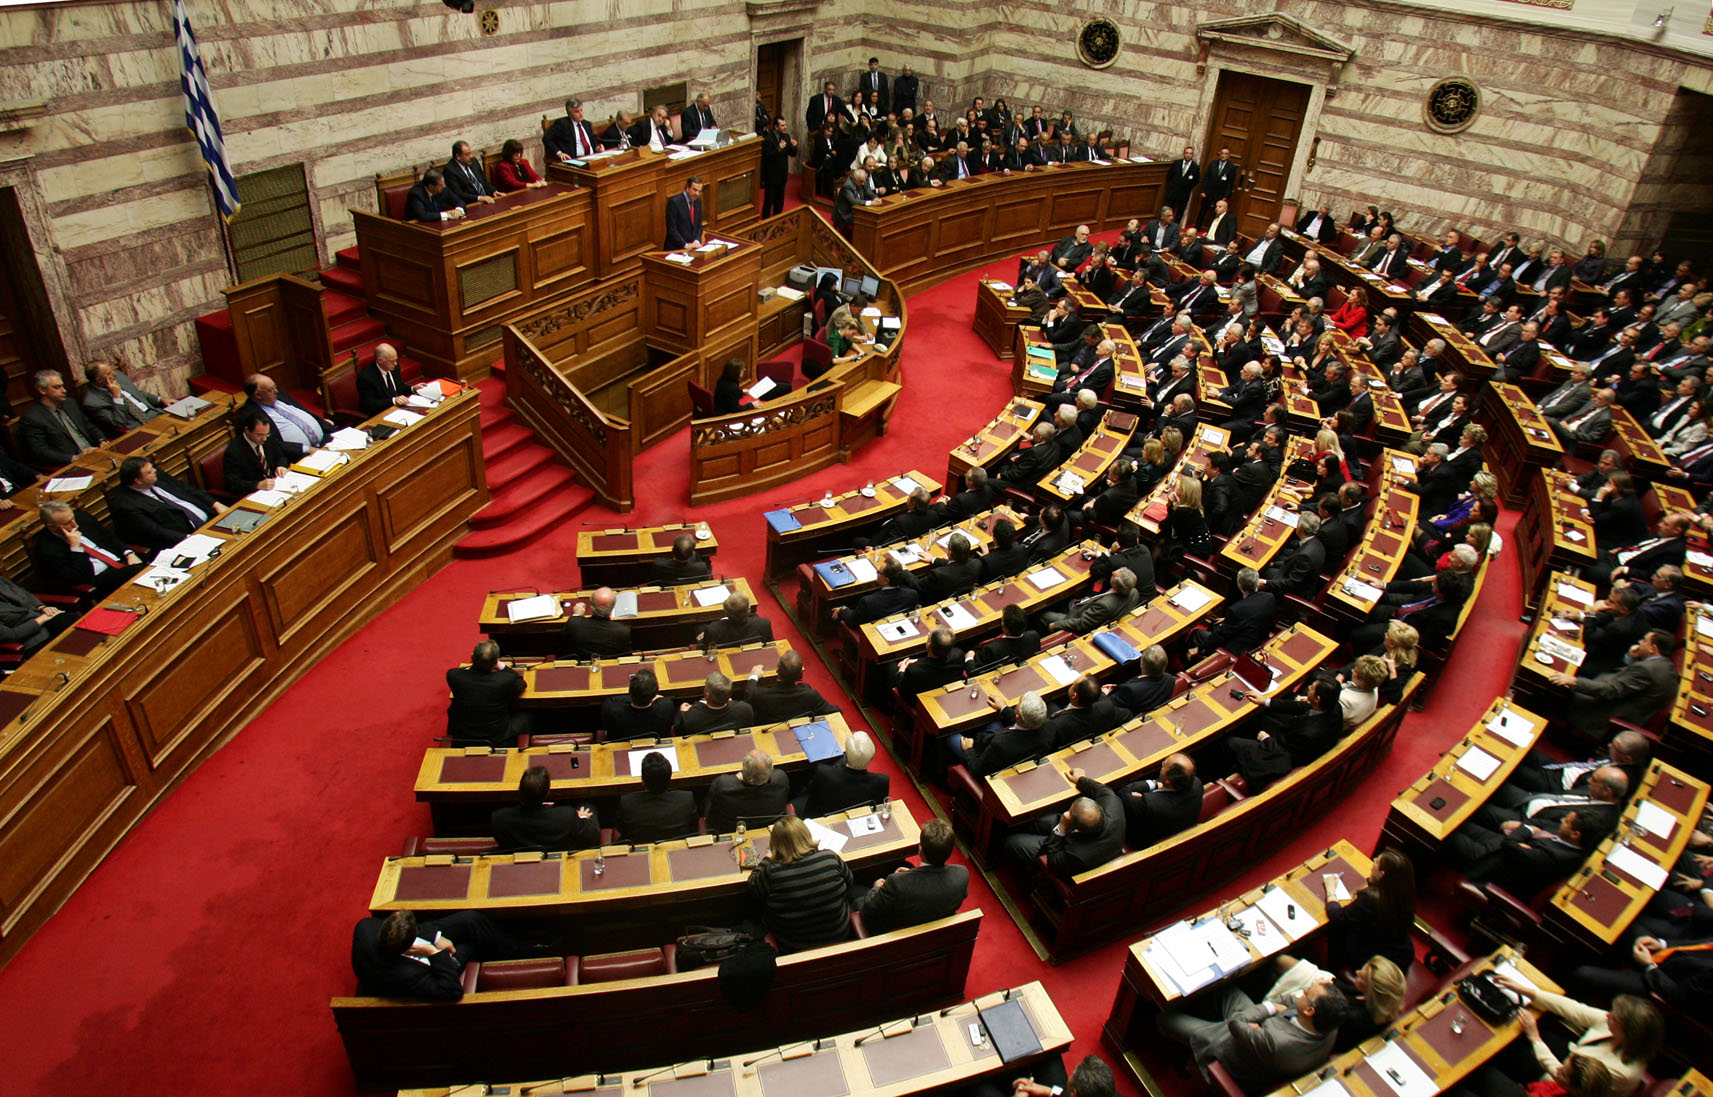 Στη Βουλή το νομοσχέδιο για πρόστιμα έως 2.000.000 ευρώ για παραβάσεις σε παρόχους «on line» υπηρεσιών